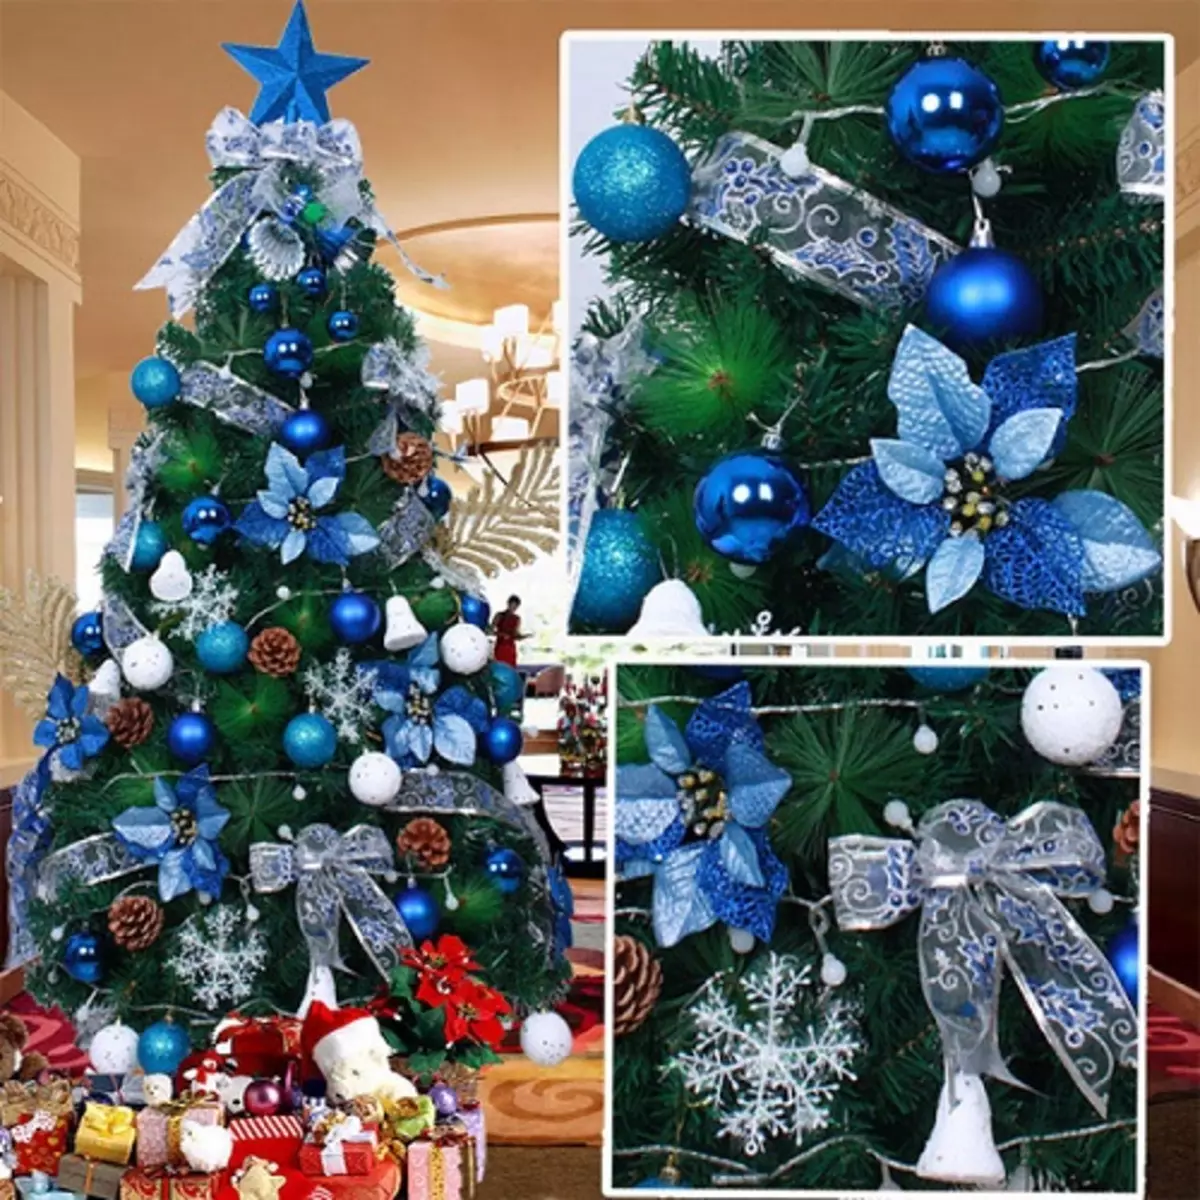 如何在蓝色银色颜色装饰圣诞树？ 30张照片如何打扮球和其他装饰在蓝色和银色的色调？ 7627_29